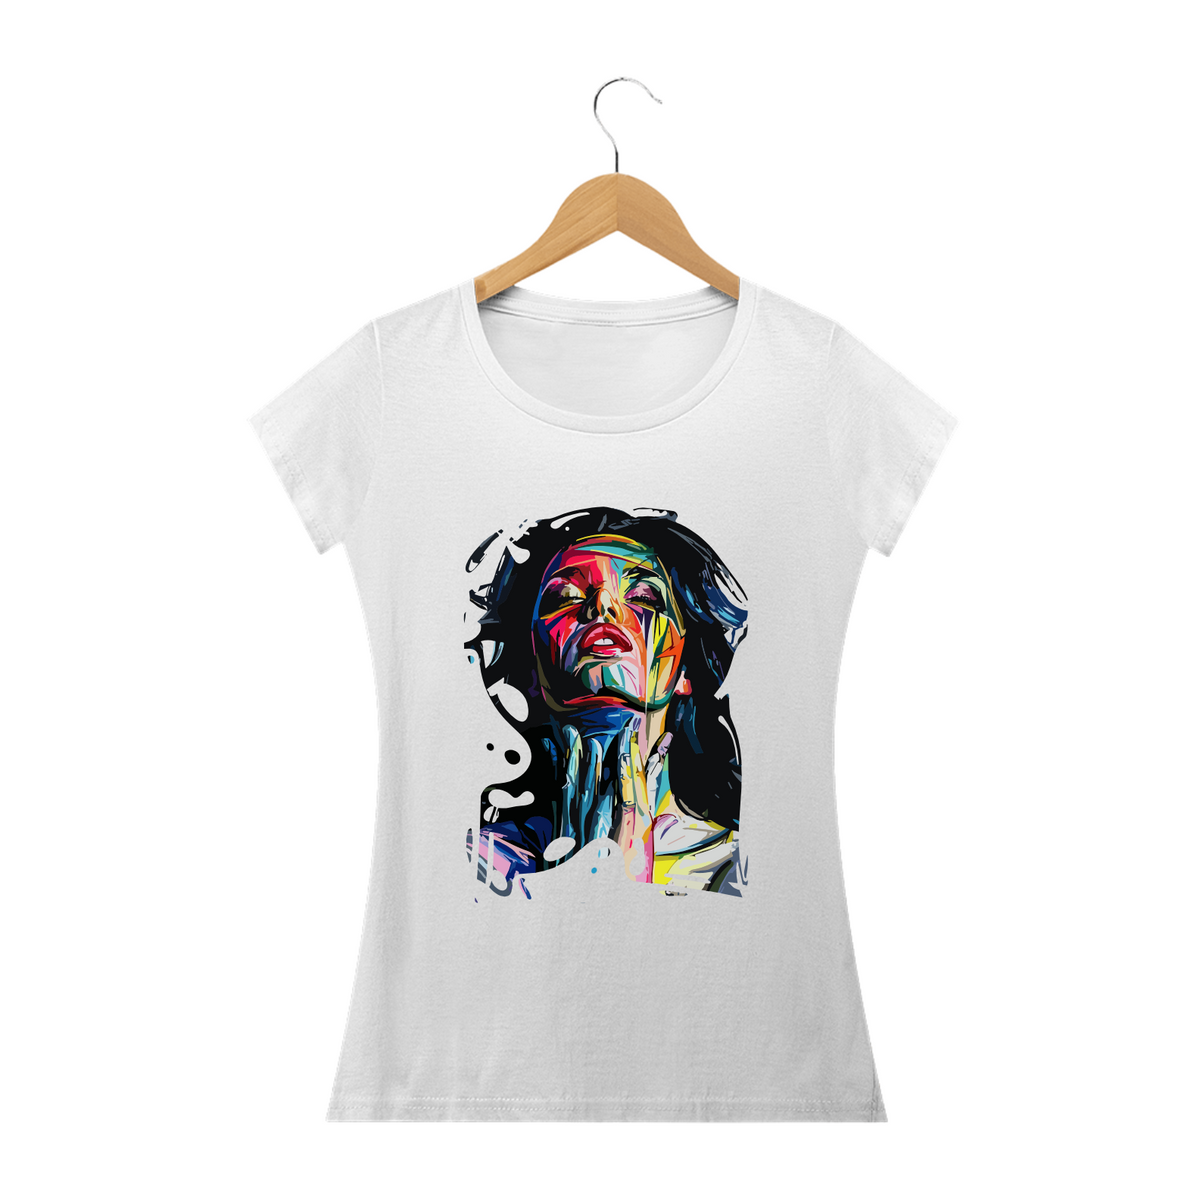 Nome do produto: BRUNETTE ORGASM - Camiseta Feminina Personalizada com Estampa Pop Art